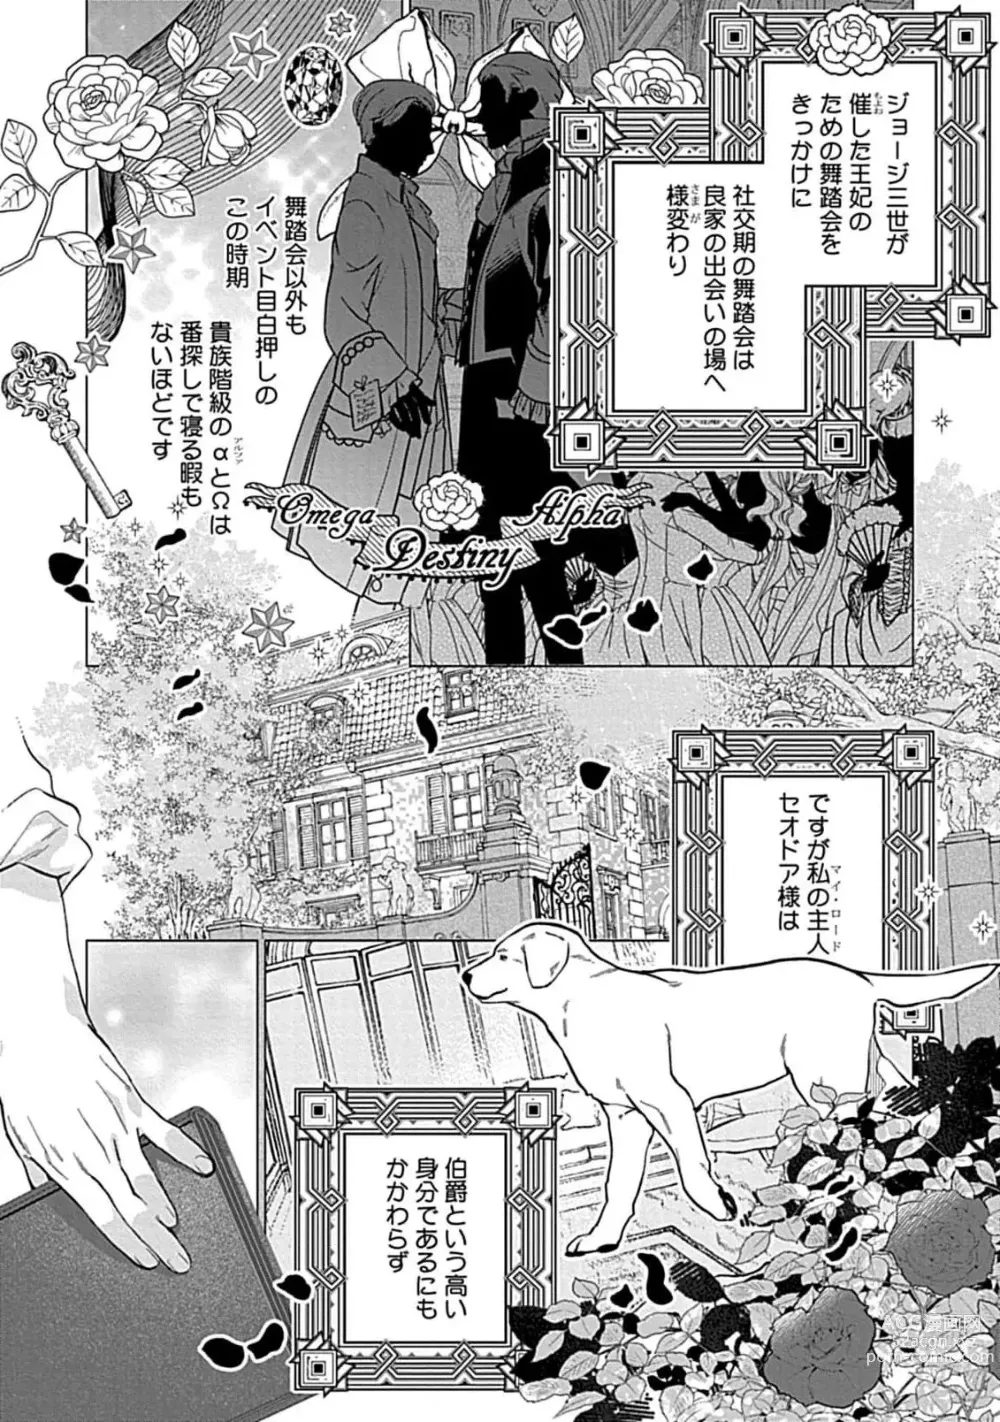 Page 4 of manga Hoshikuzu no Debutante - Debutante of Stardust 1